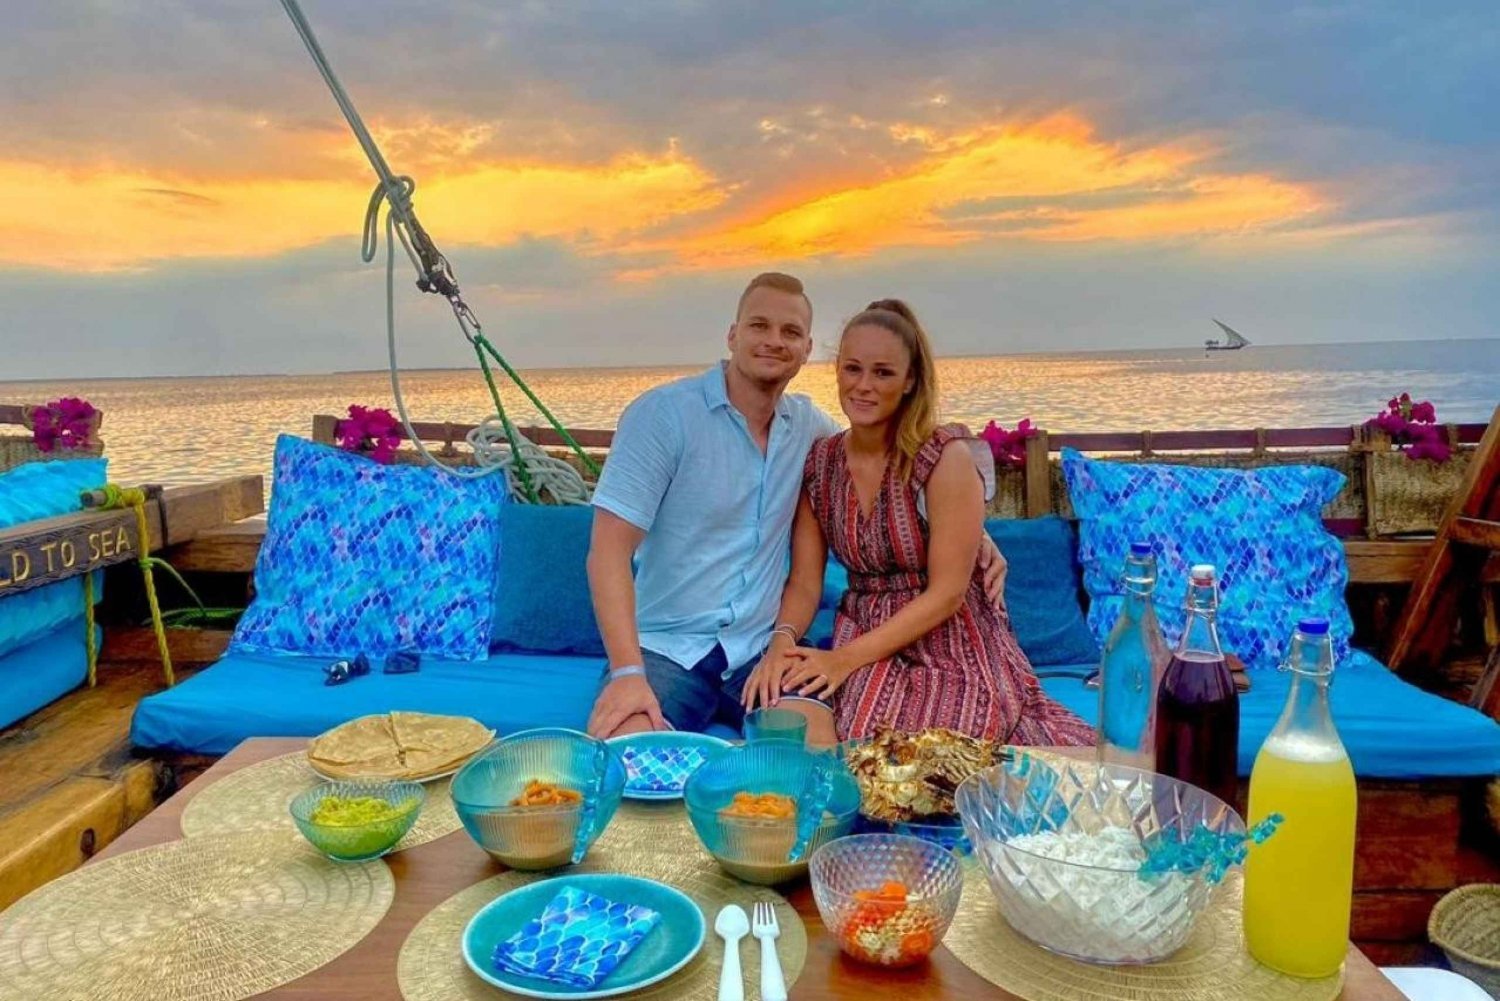 Zanzibar: Romantic Sunset Cruise with Dinner